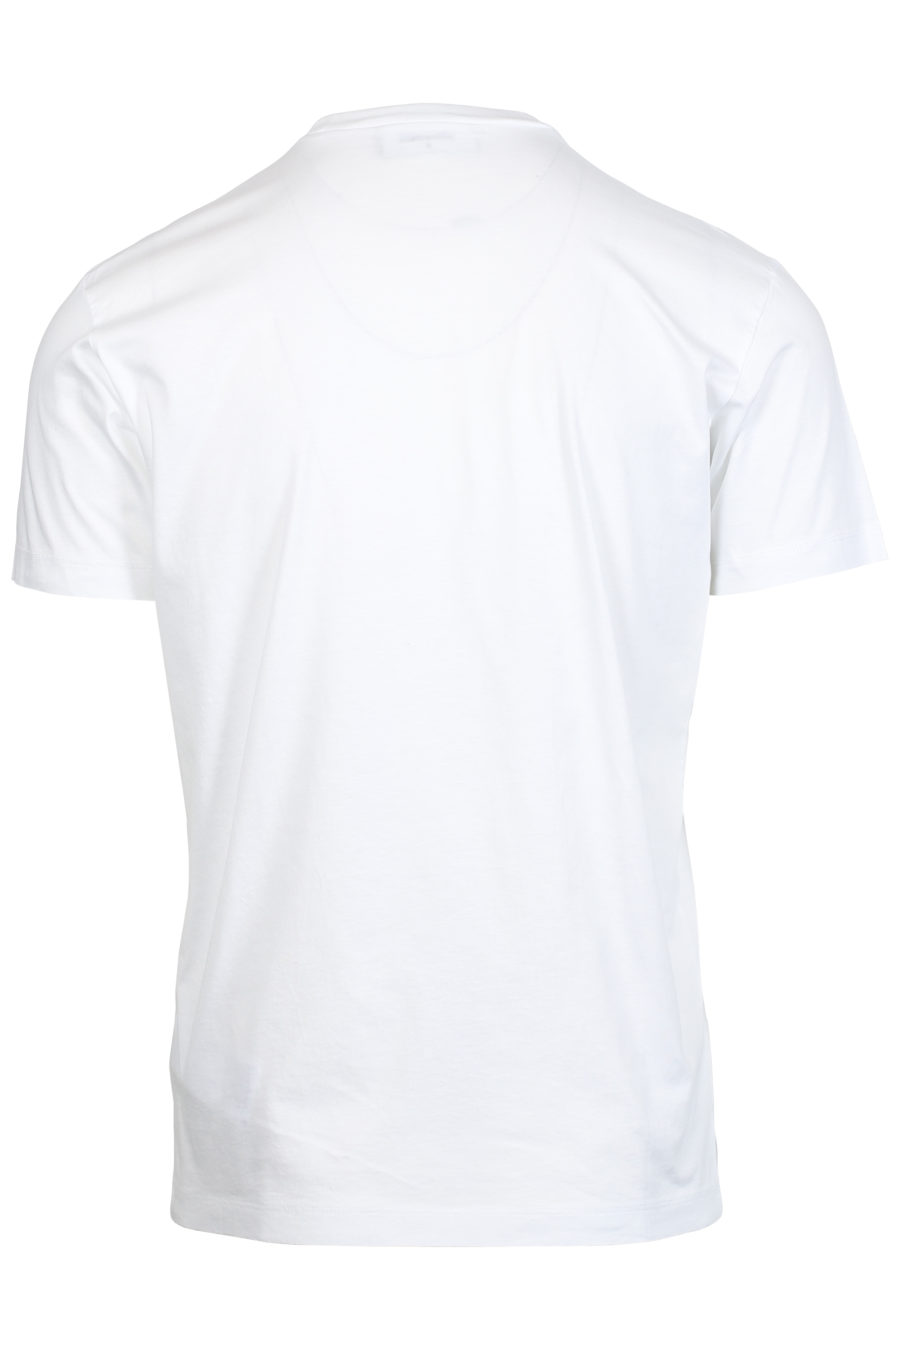 Weißes T-Shirt mit Blattaufdruck - IMG 2405